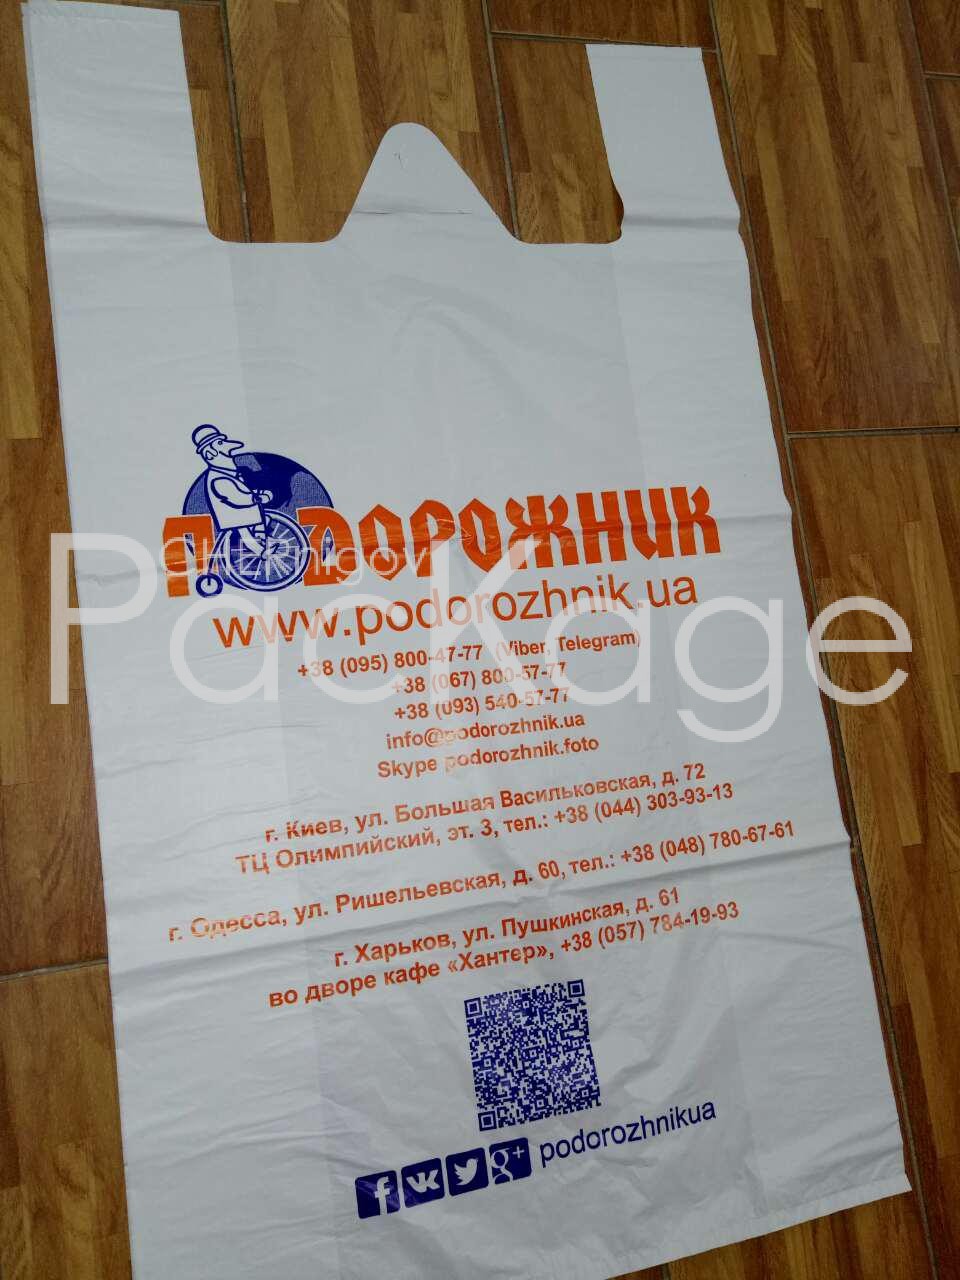 Поліетиленові пакети для продажу будівельних матеріалів Chernigov Package - Фото мйк 40х69_25